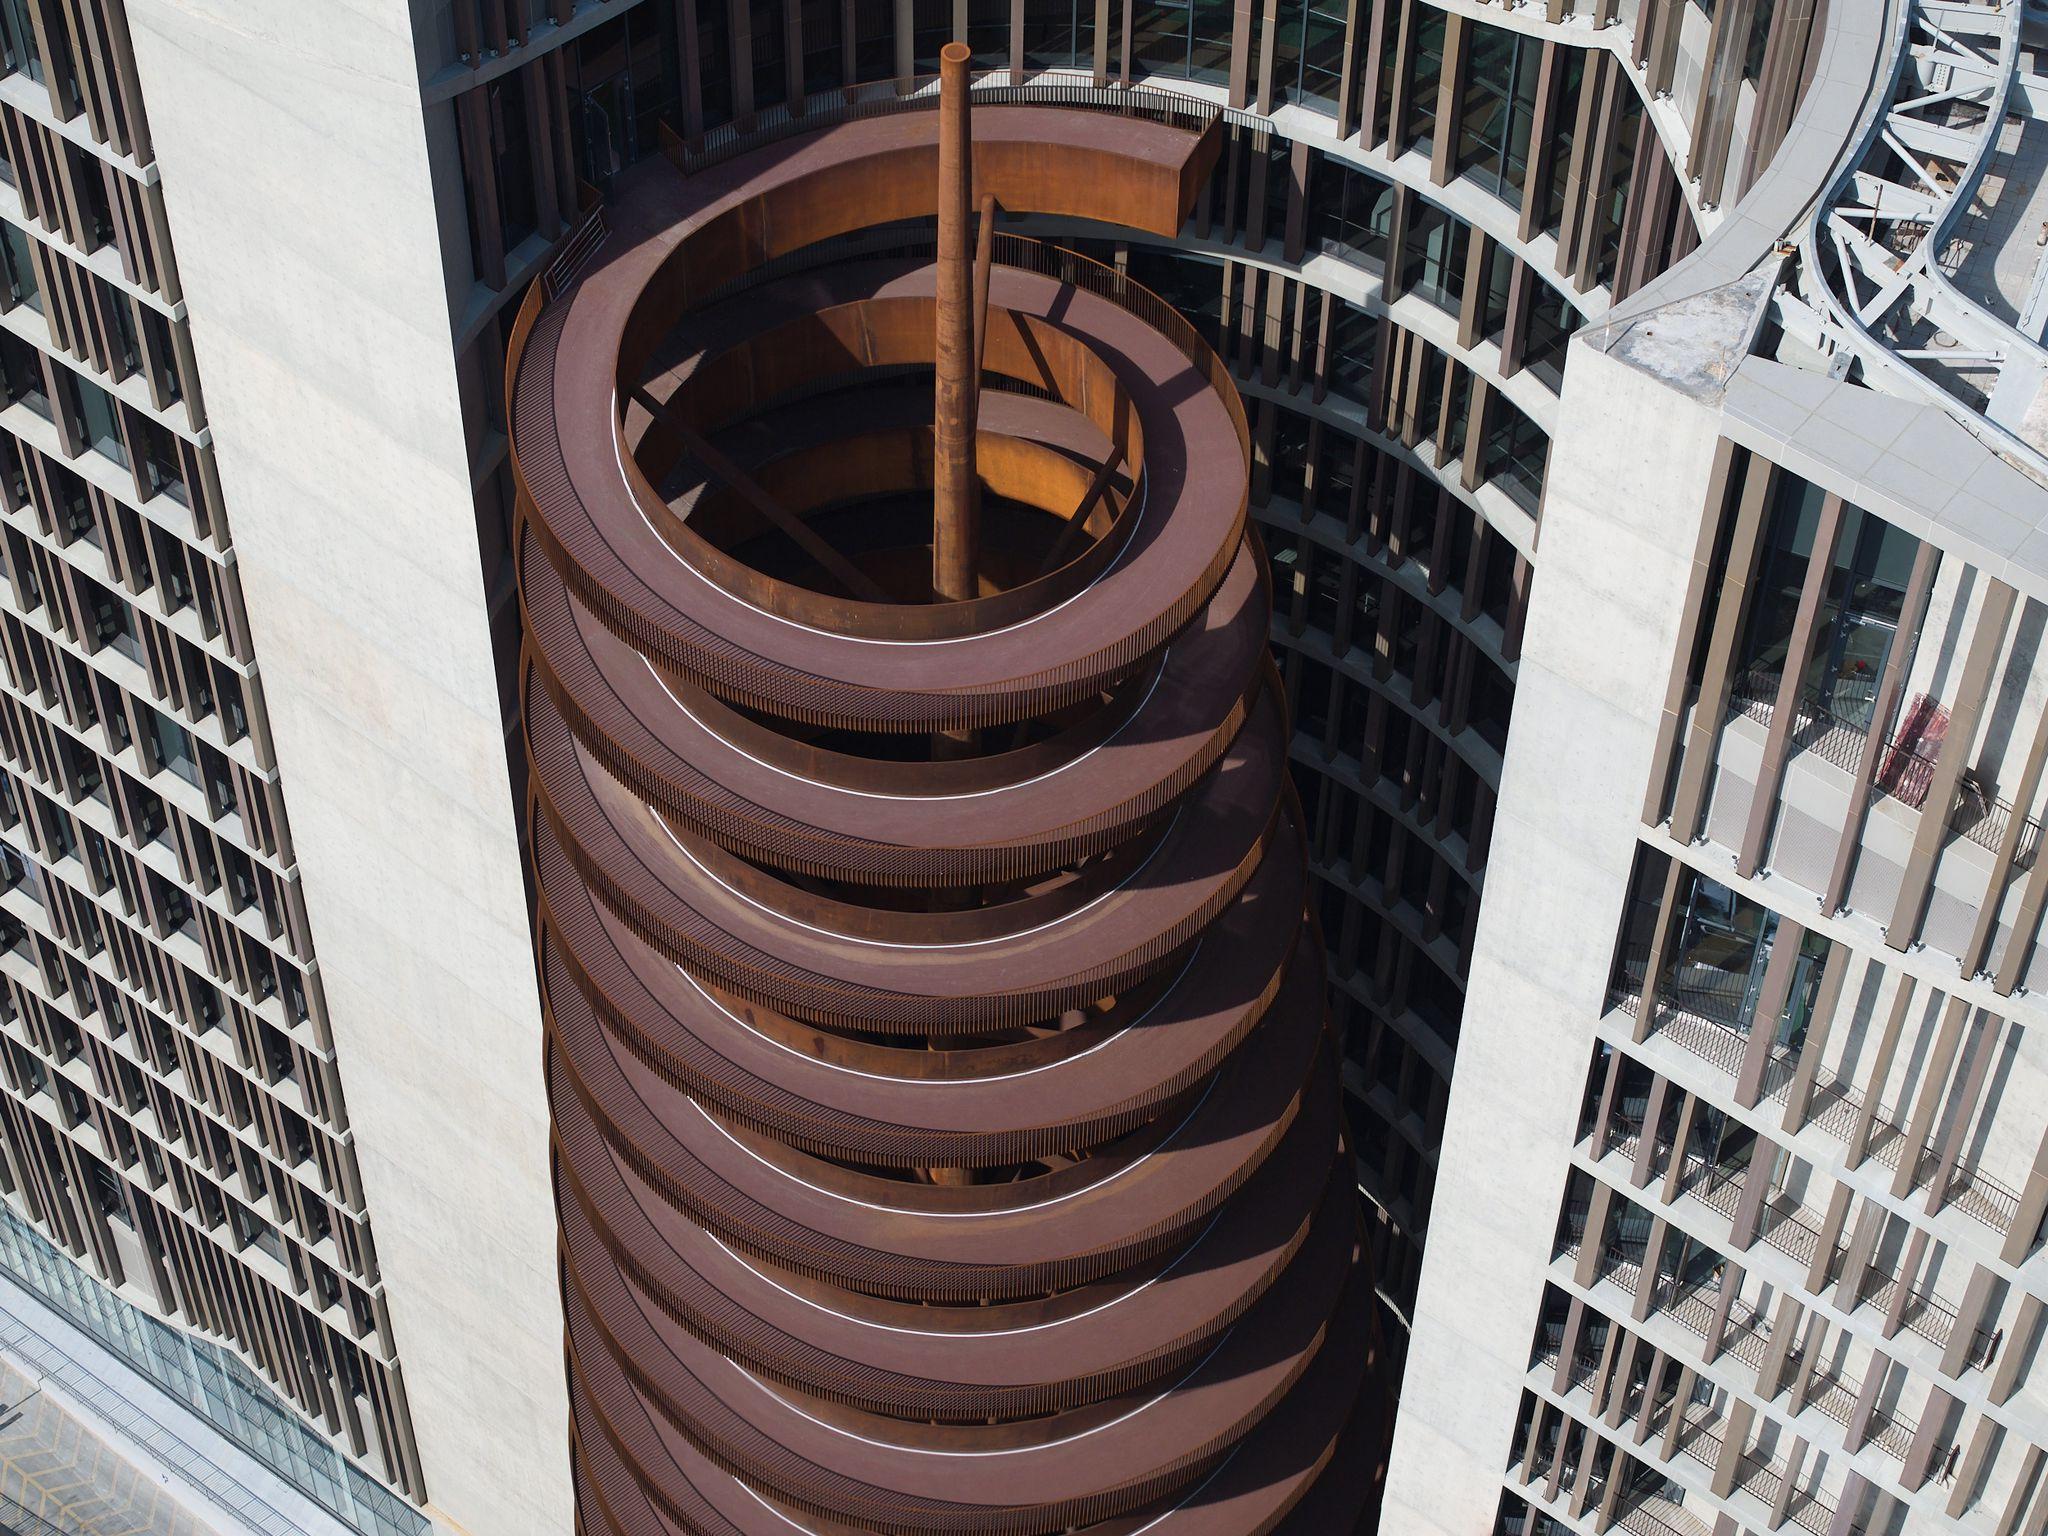 Architettura, nuovo palazzo di 16 piani a Shanghai. L’opera è firmata dallo studio fiorentino Archea Associati